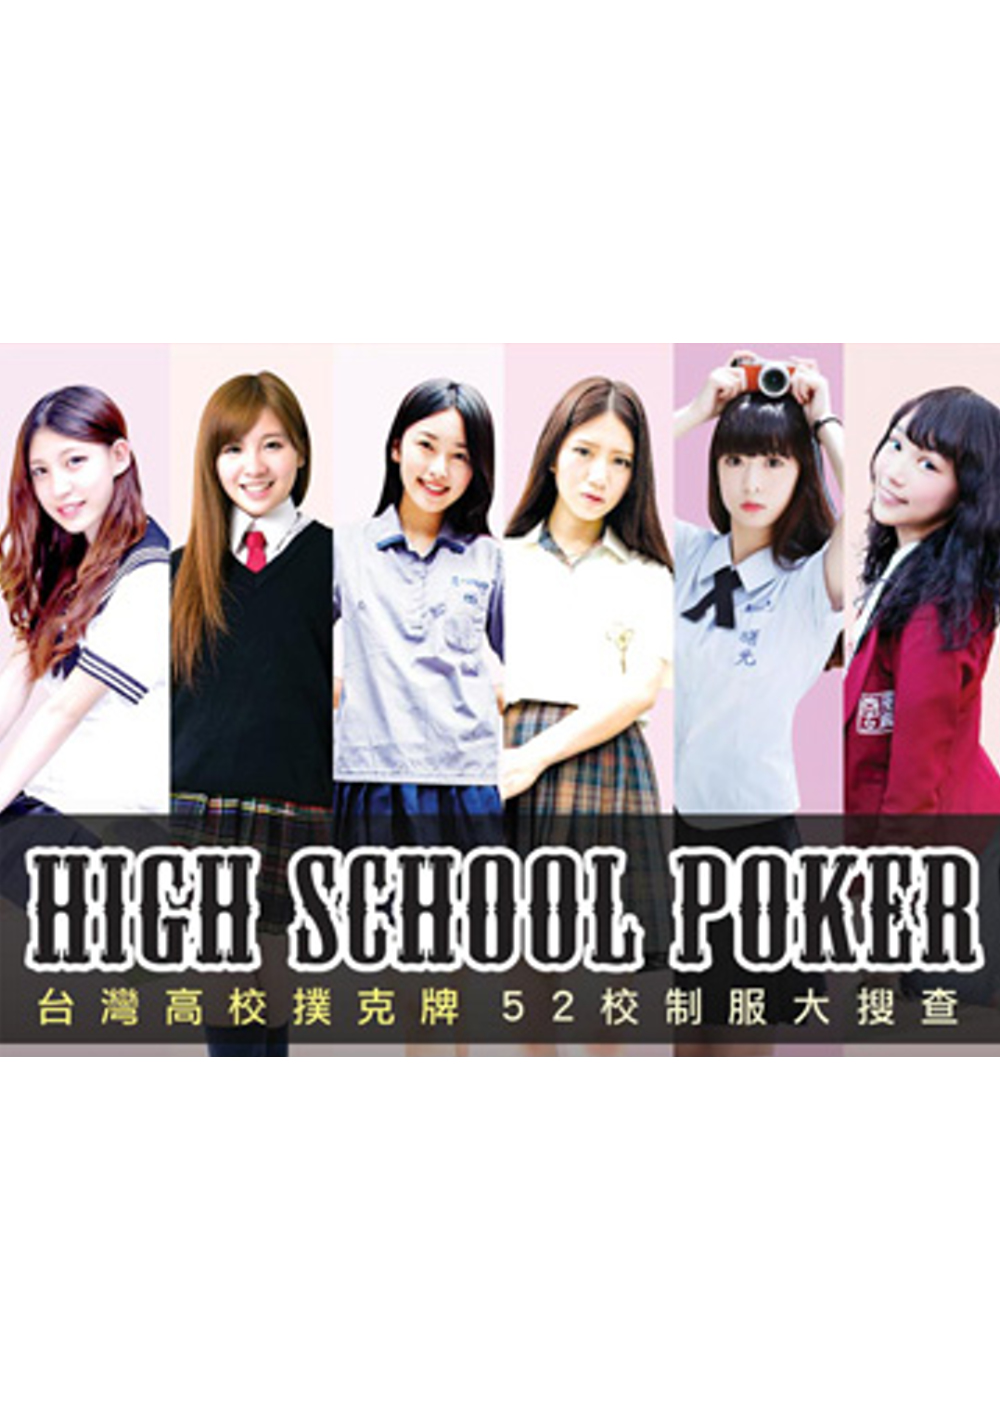 台灣高校撲克牌